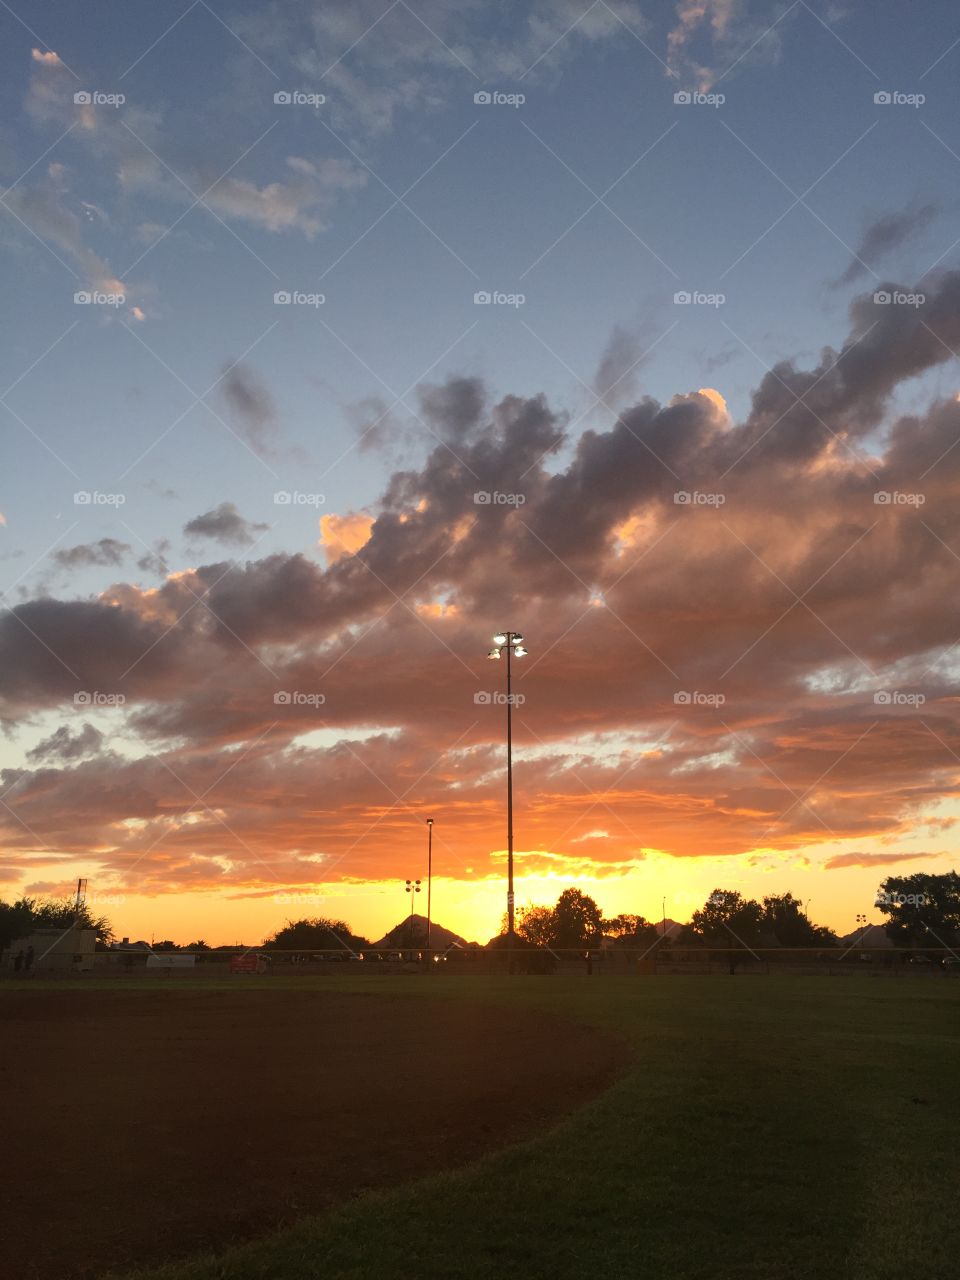 Sunset over baseball field 